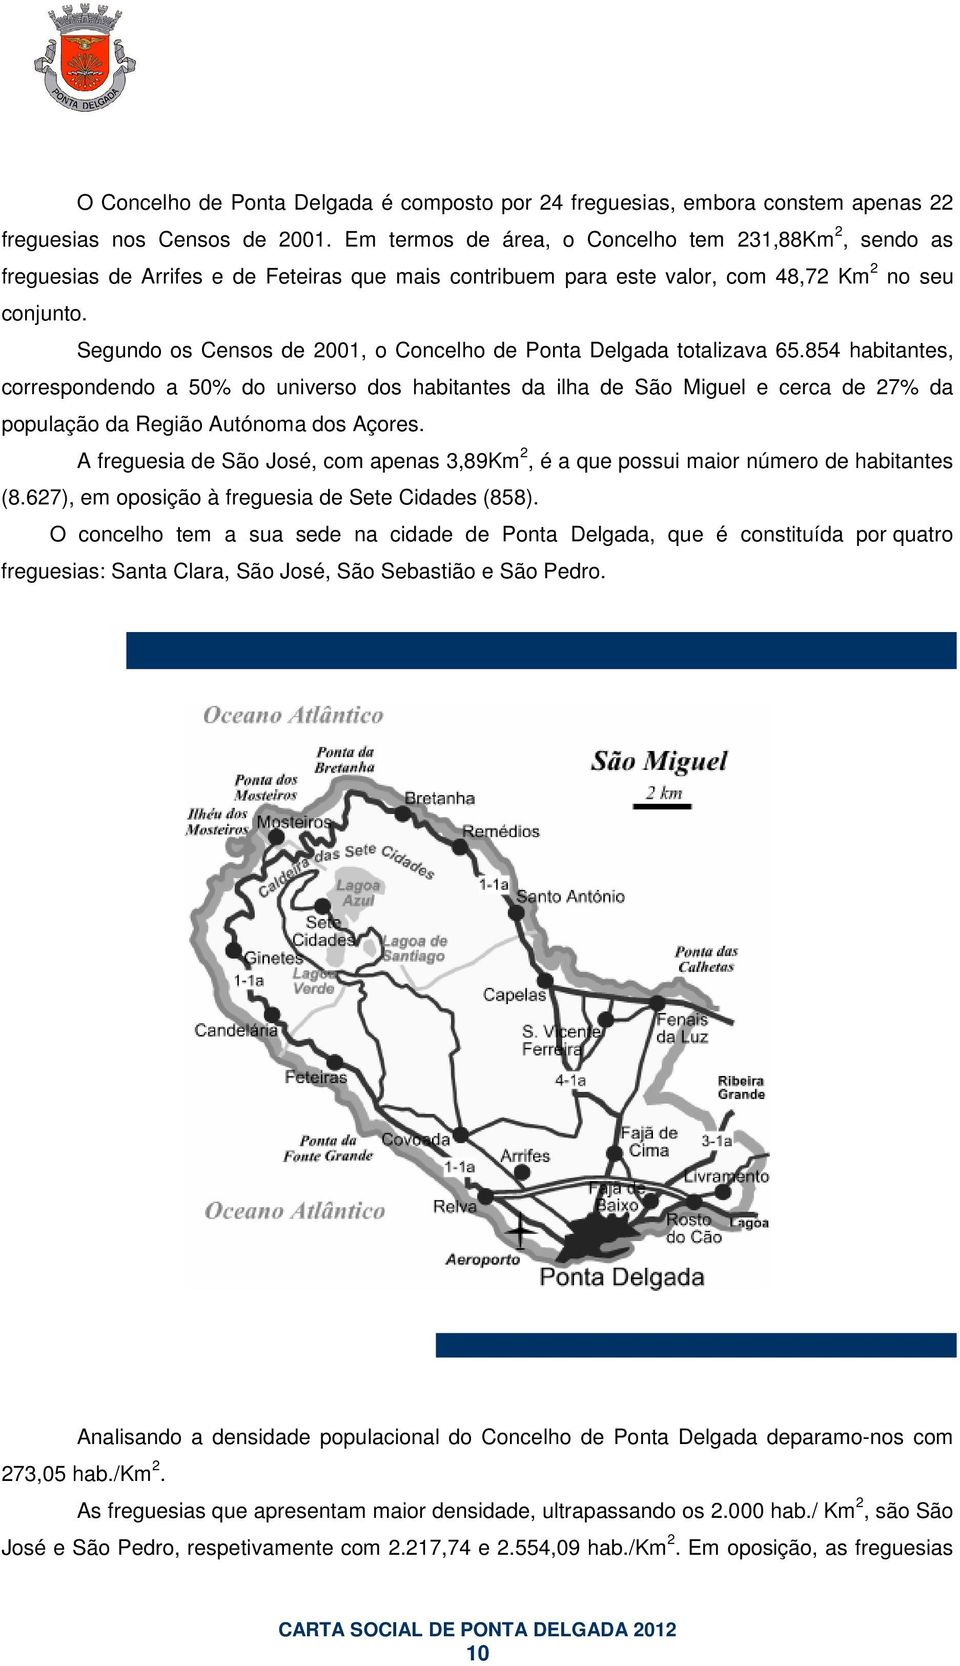 Segundo os Censos de 2001, o Concelho de Ponta Delgada totalizava 65.